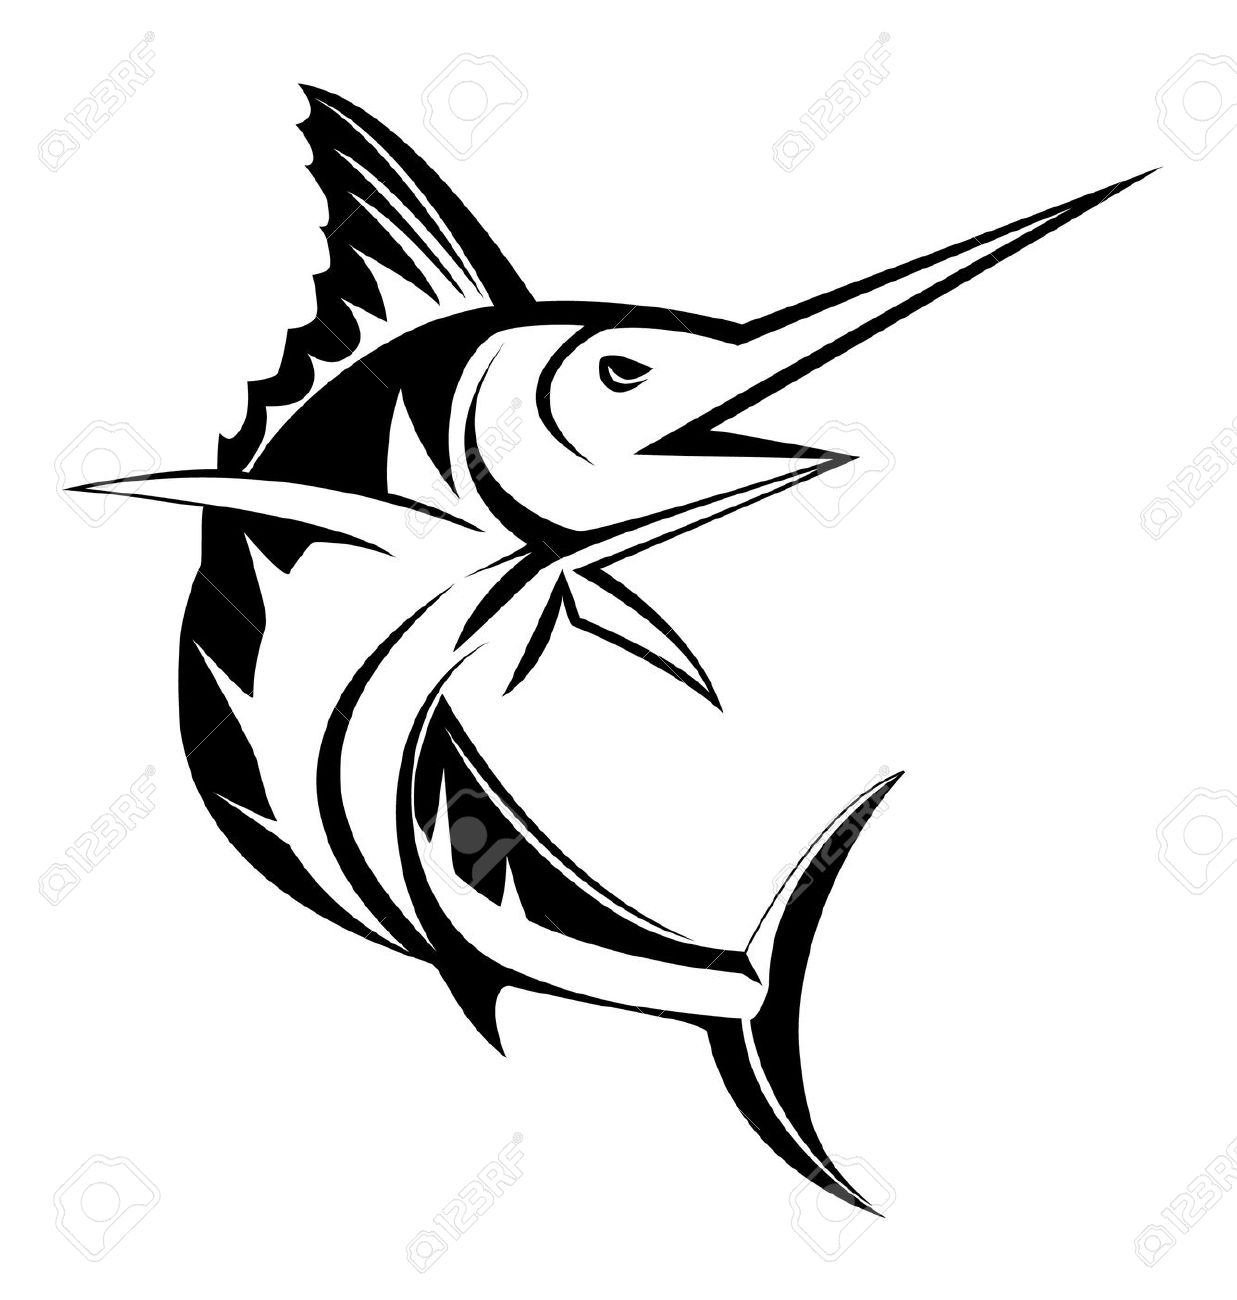 sailfish: marlin fish Illustration